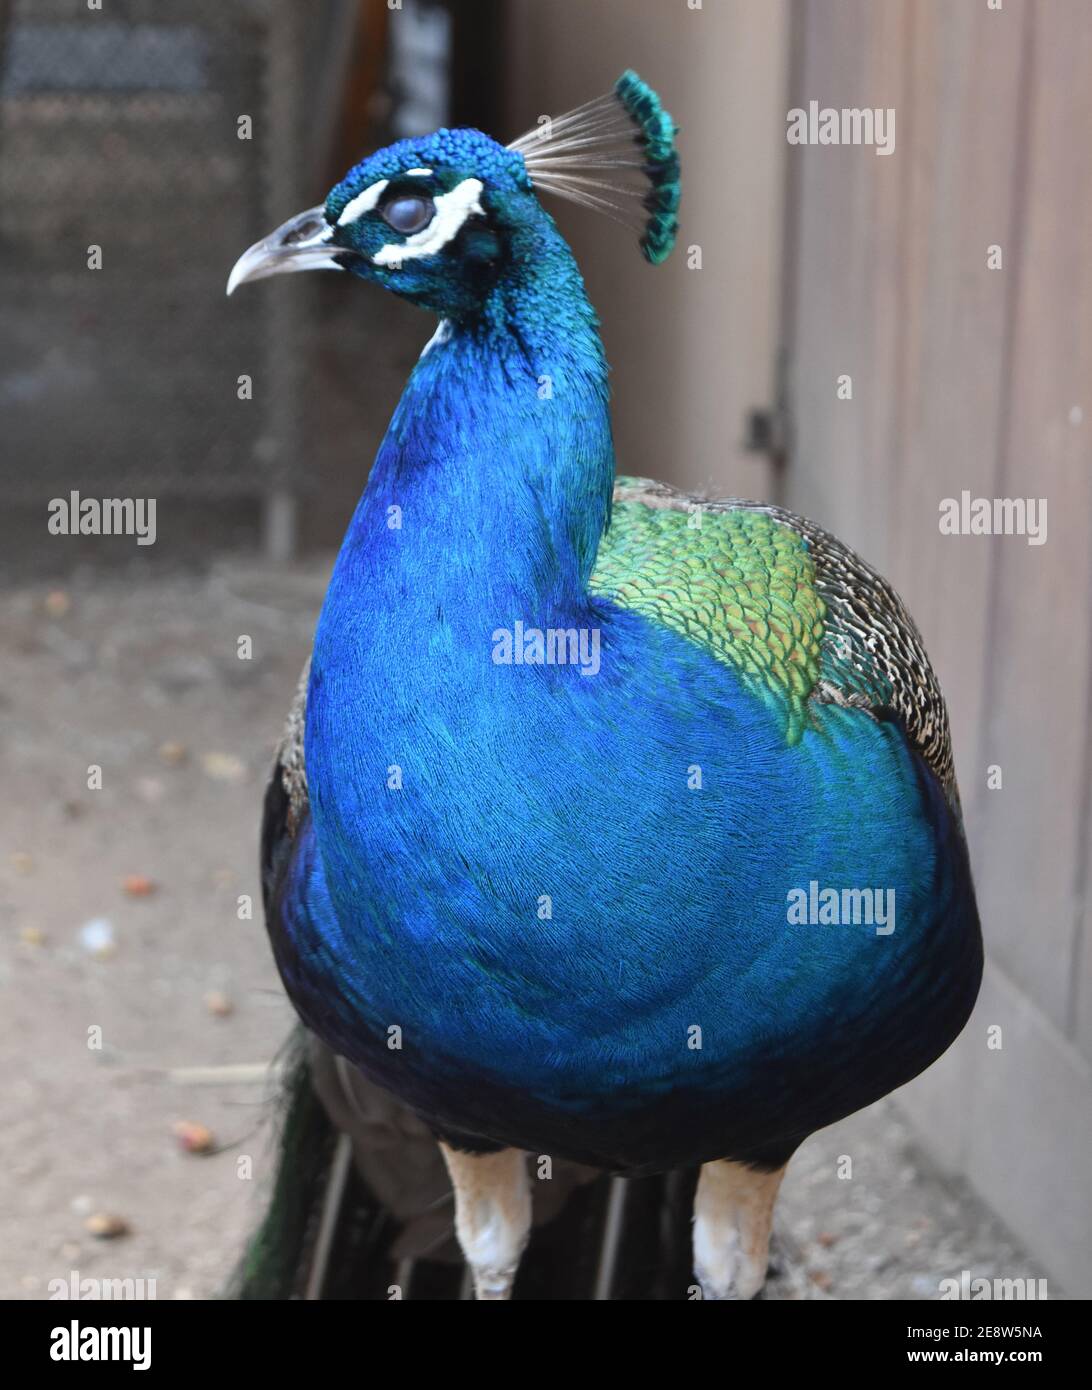 Beautiful cobalt blue peacock bird standing stock still. Stock Photo